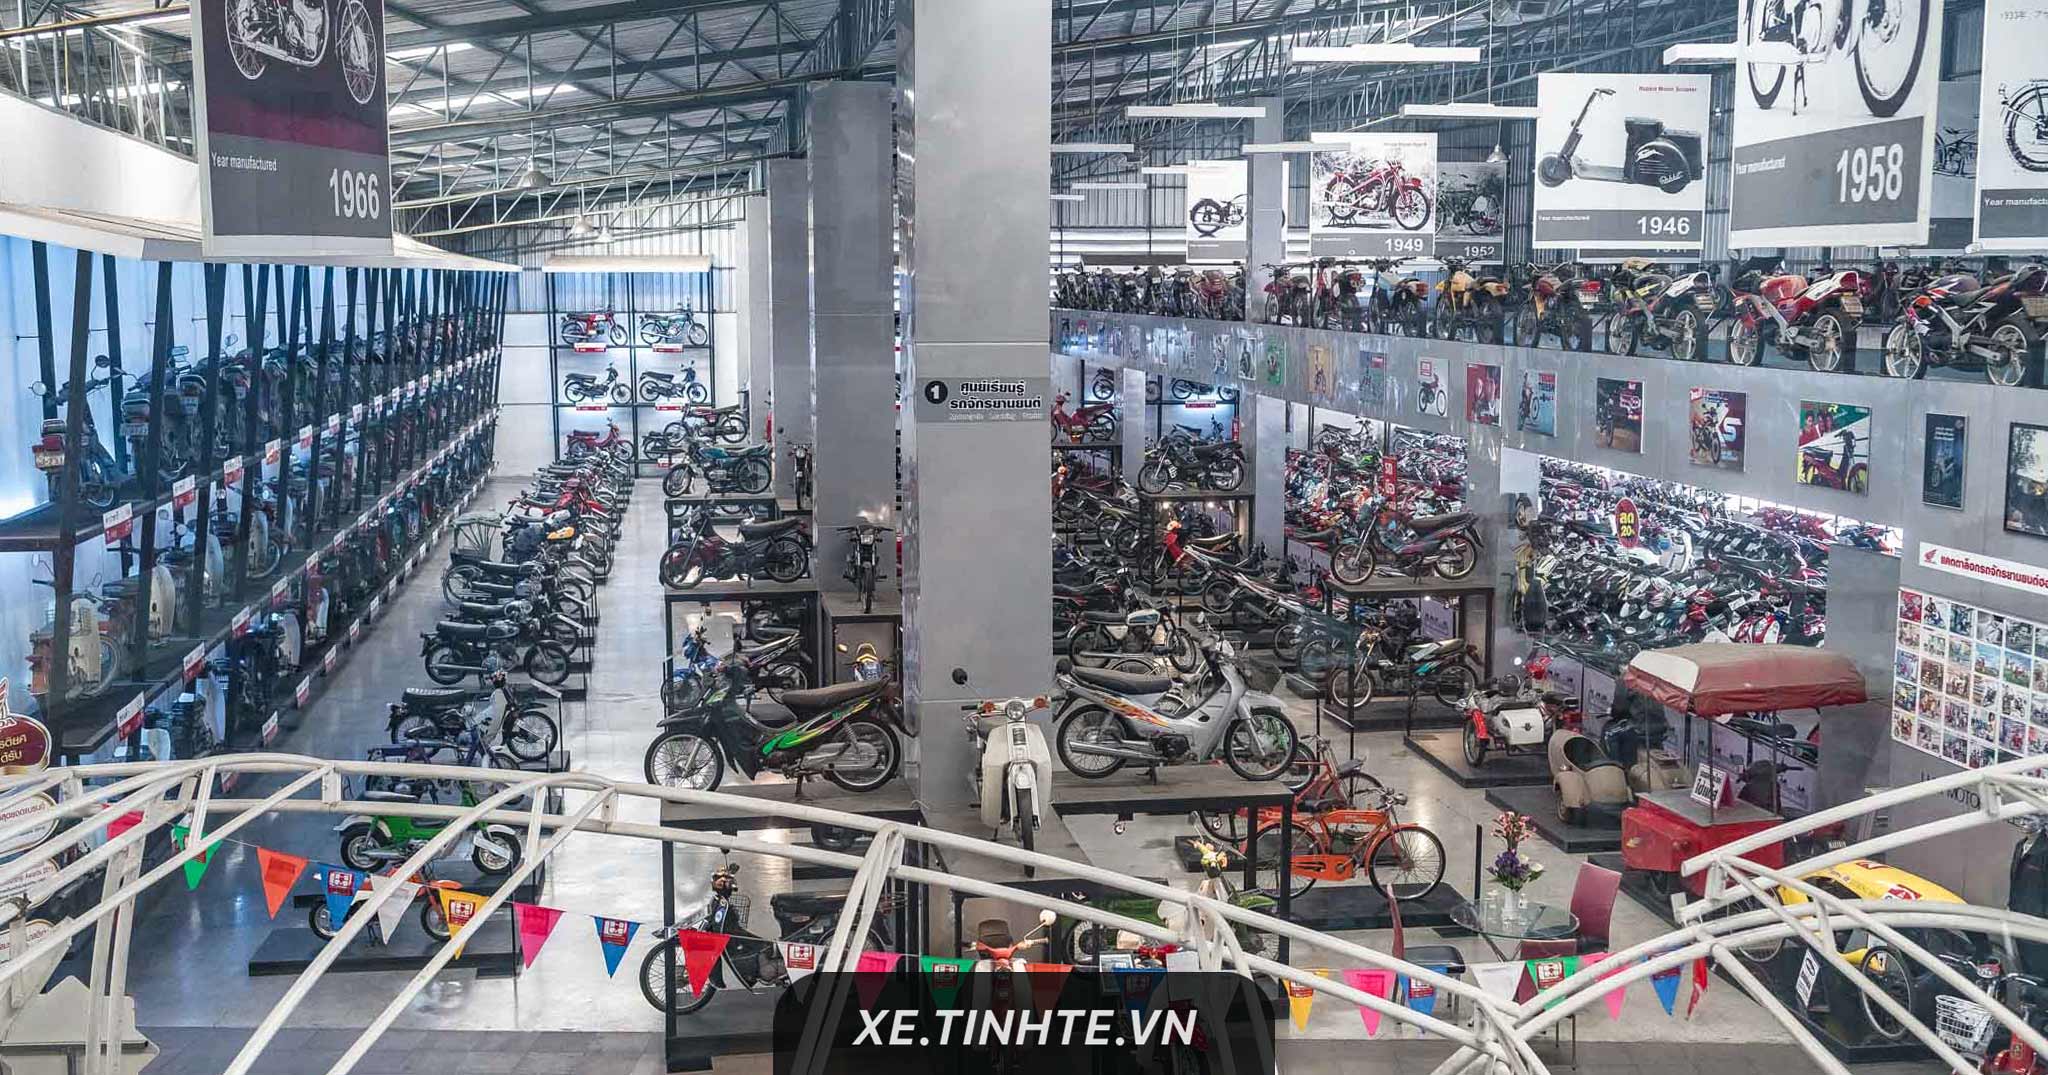 [Hình ảnh] Một vòng bảo tàng xe máy cổ LHM tại Thái: nhiều mẫu xe huyền thoại, rất đáng ghé xem